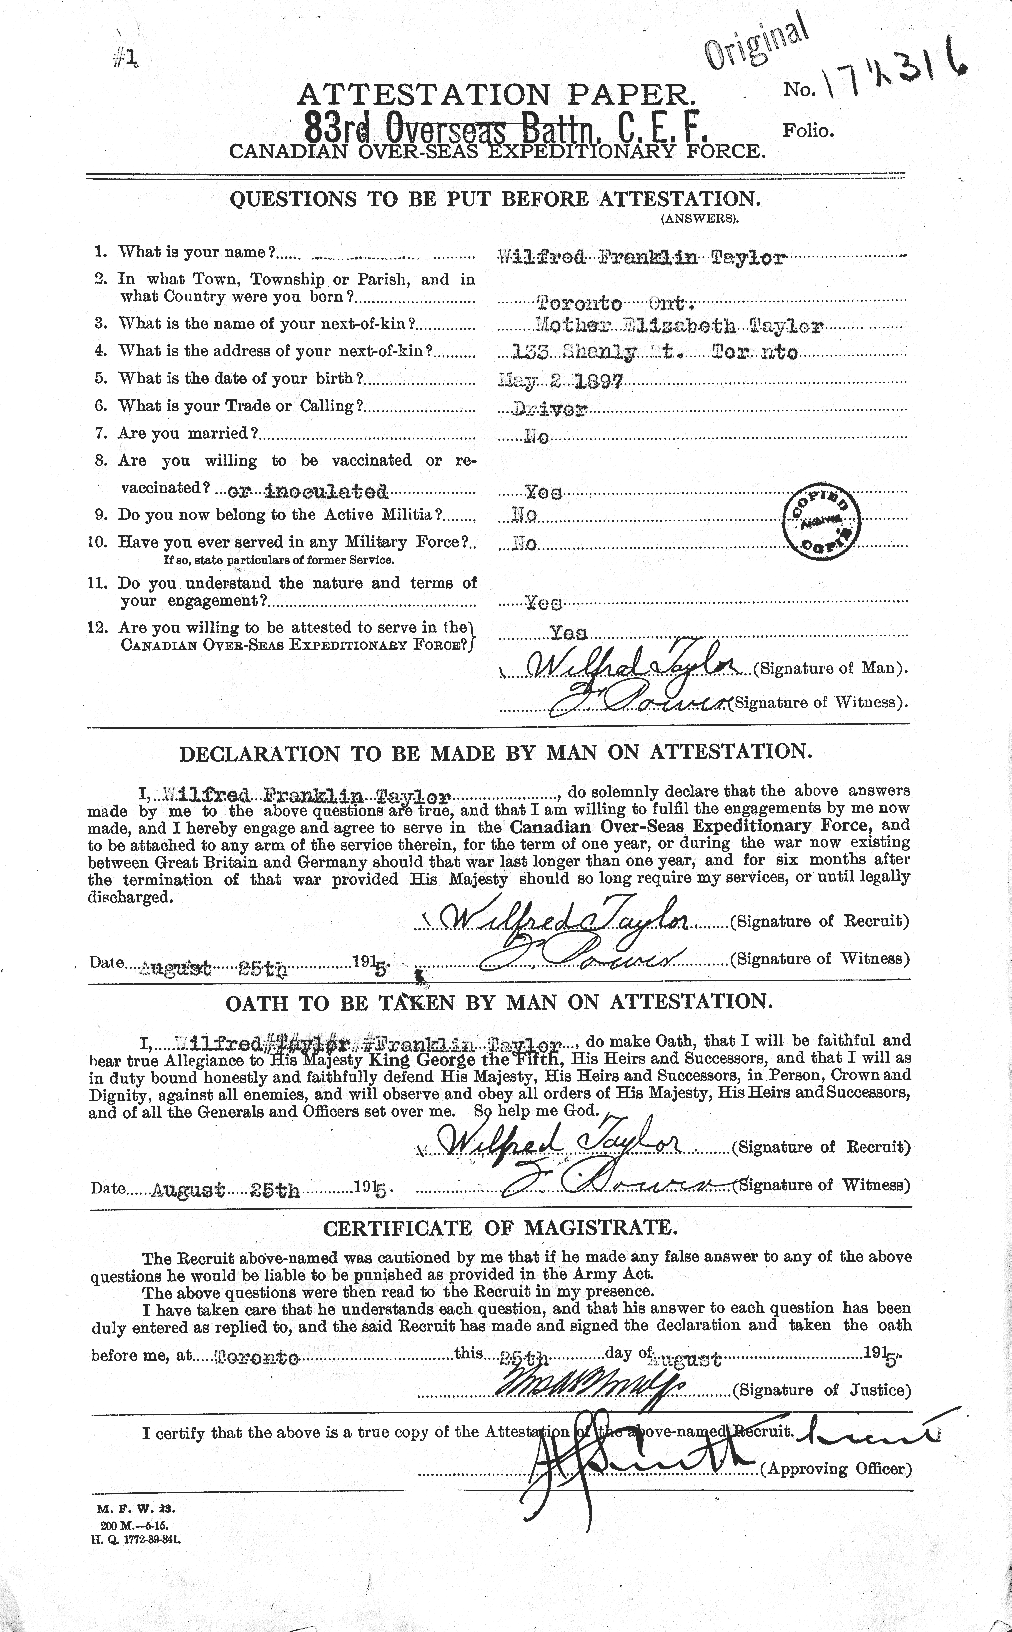 Dossiers du Personnel de la Première Guerre mondiale - CEC 628093a